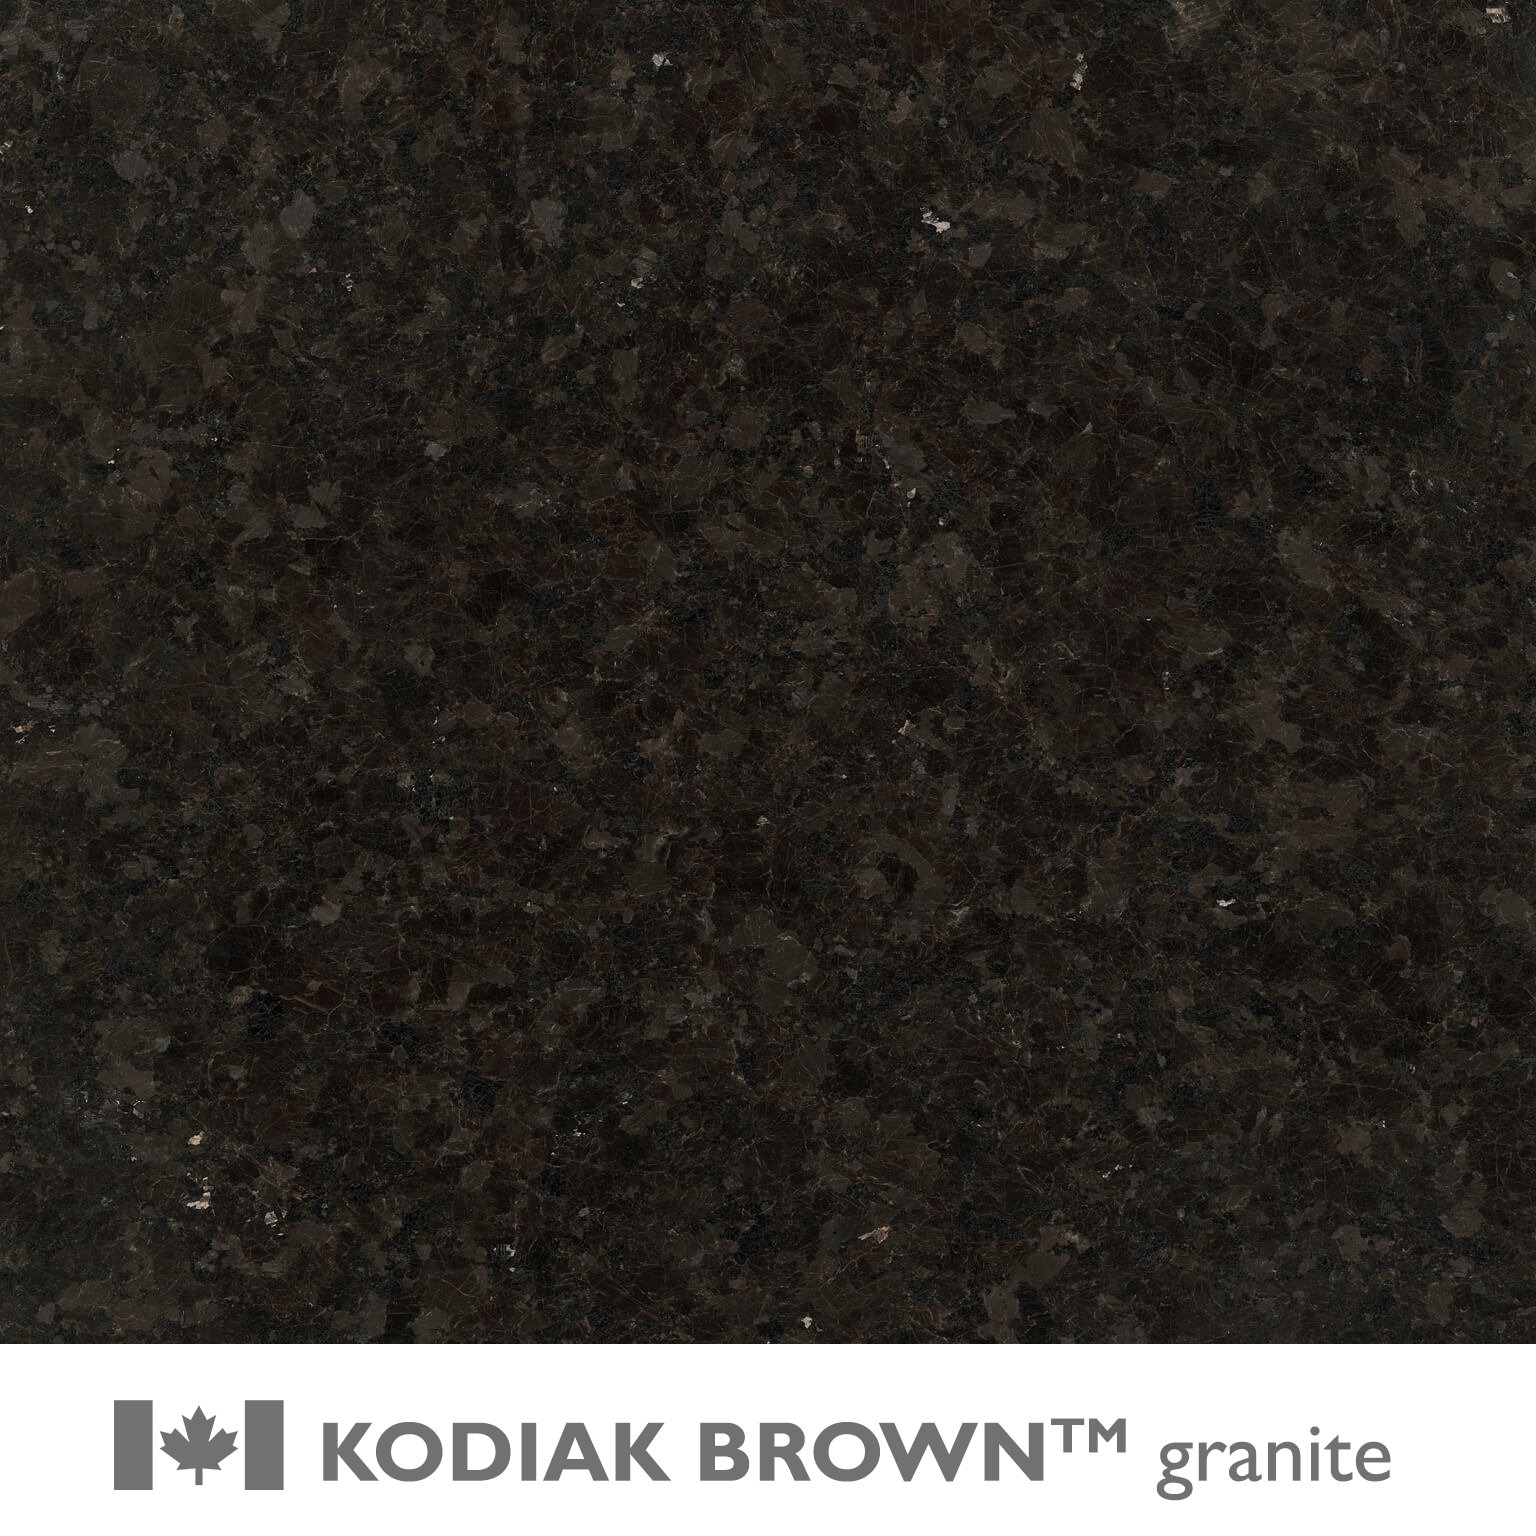 KODIAK BROWN™ granite